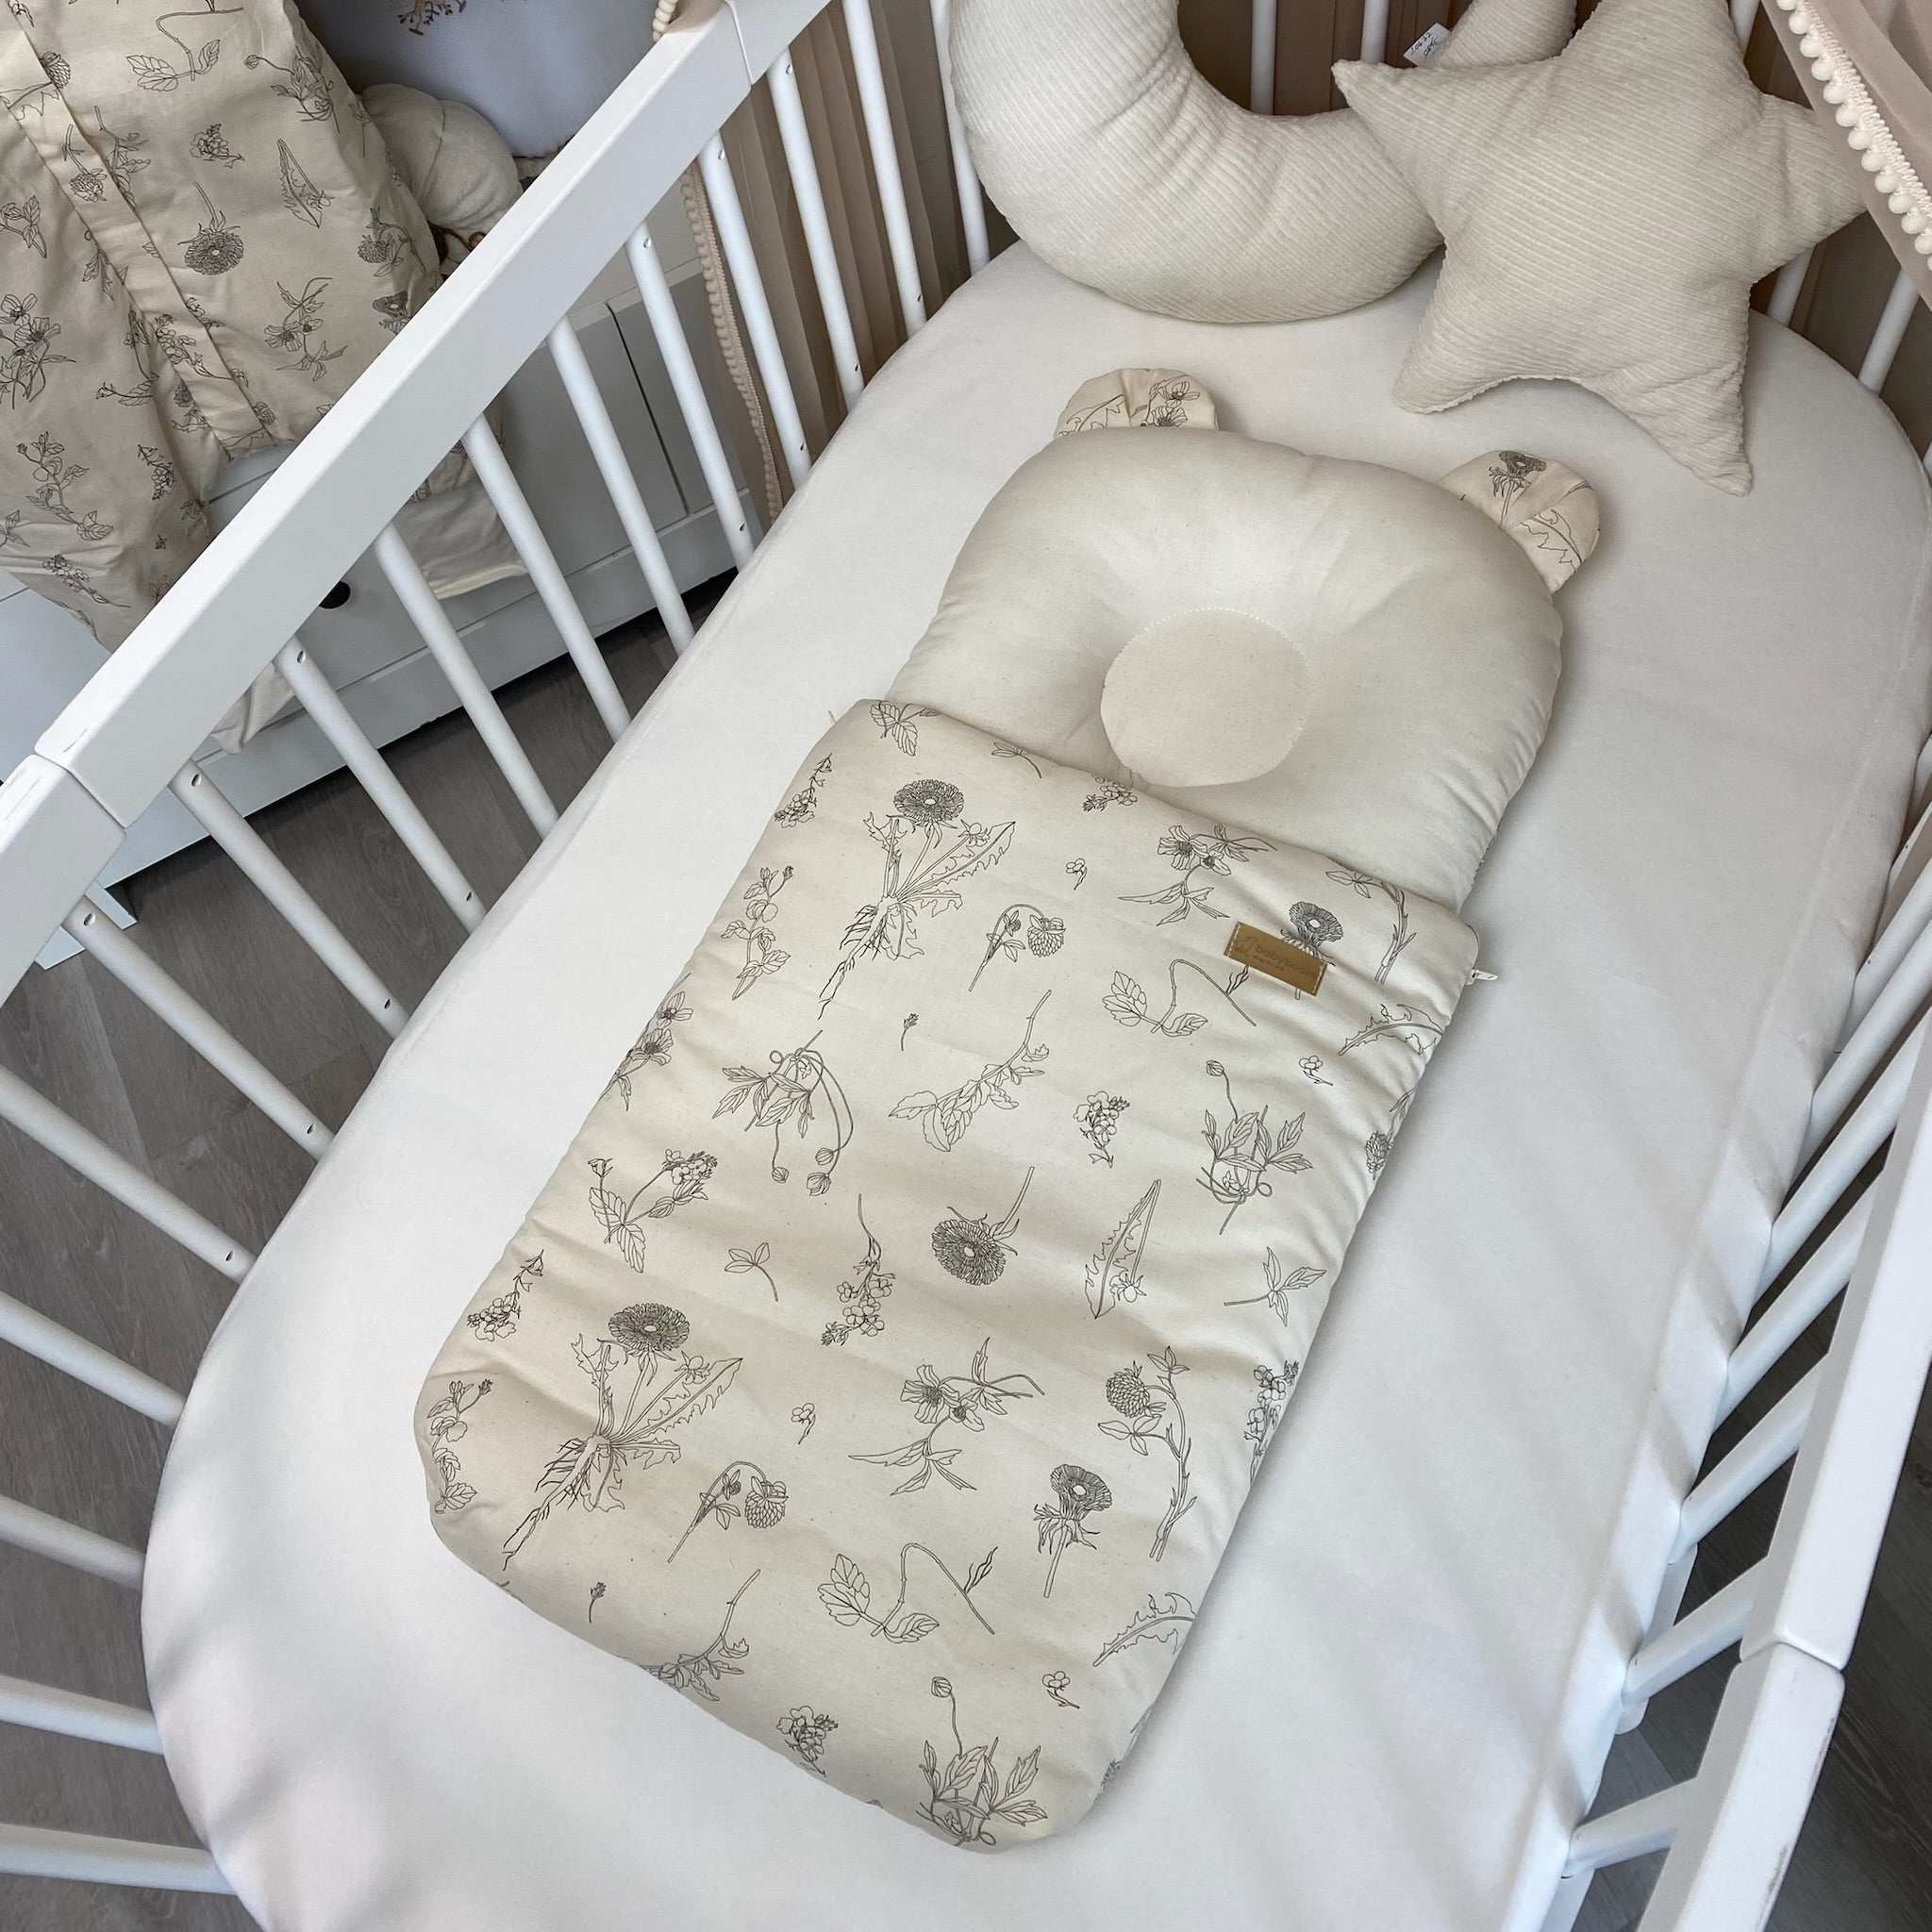 Babyschlafsack mit Bärenohren ORGANIC | ORGANISCHE BIO-BAUMWOLLE